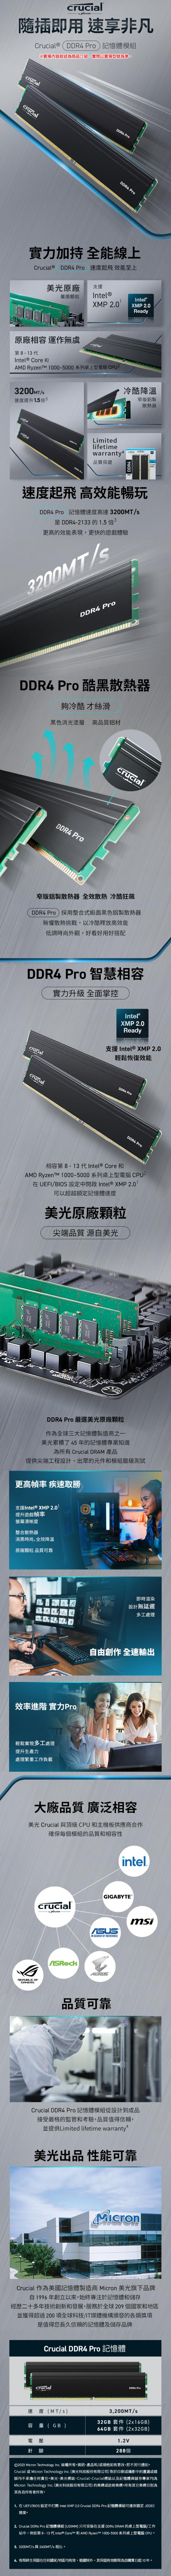 美光Micron Crucial PRO 32G(16G*2) DDR4 3200 電競黑散熱片